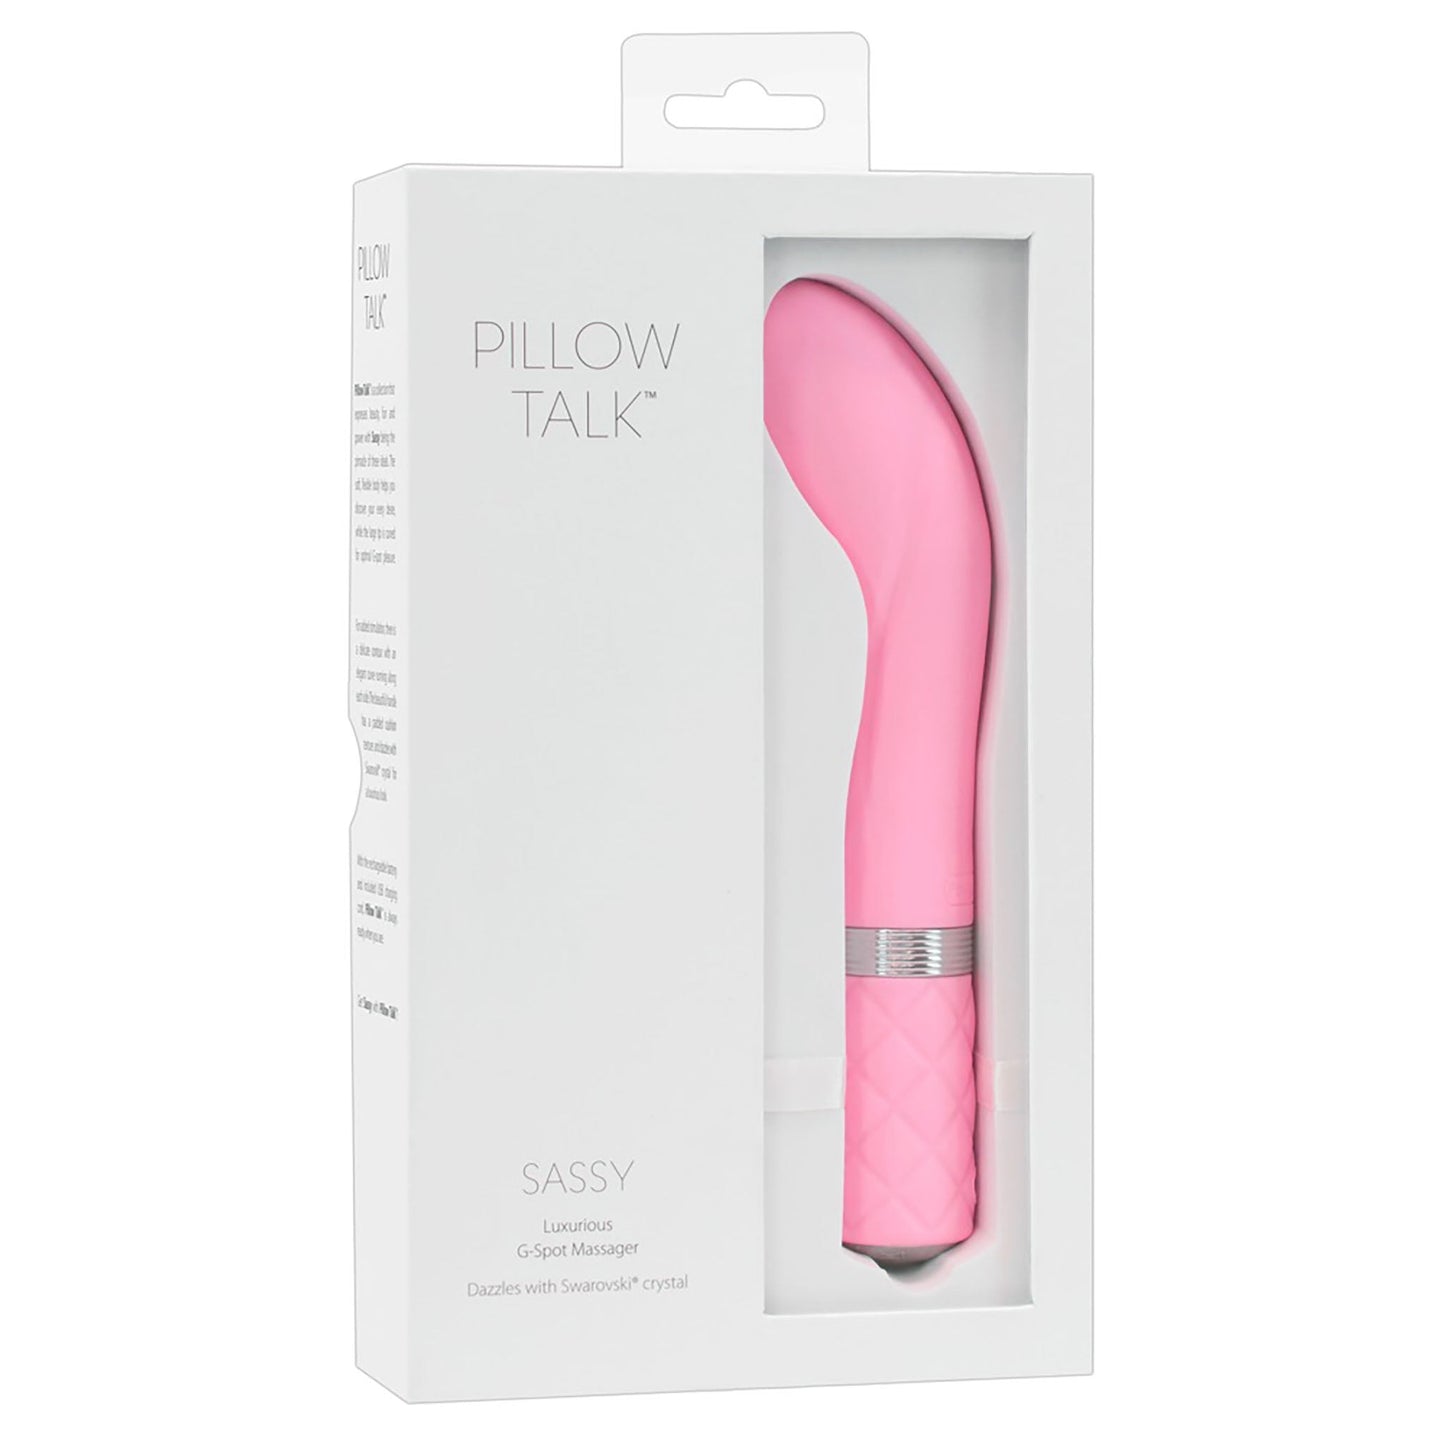 Sassy Luxurious G-Spot Massager, G-Punkt Vibrator von Pillow Talk in Verpackung